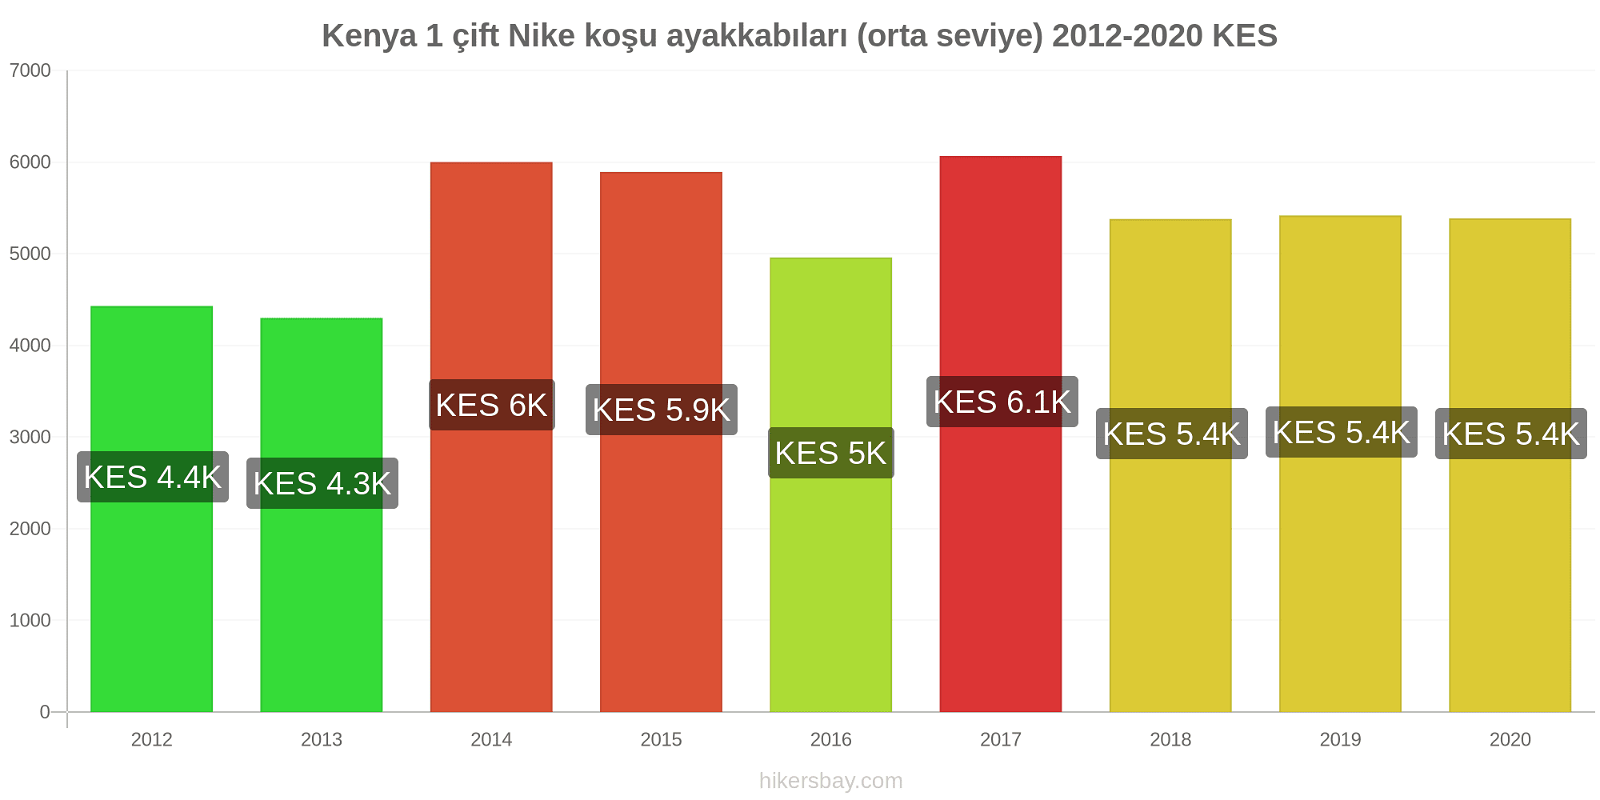 Kenya fiyat değişiklikleri 1 çift Nike koşu ayakkabıları (orta seviye) hikersbay.com